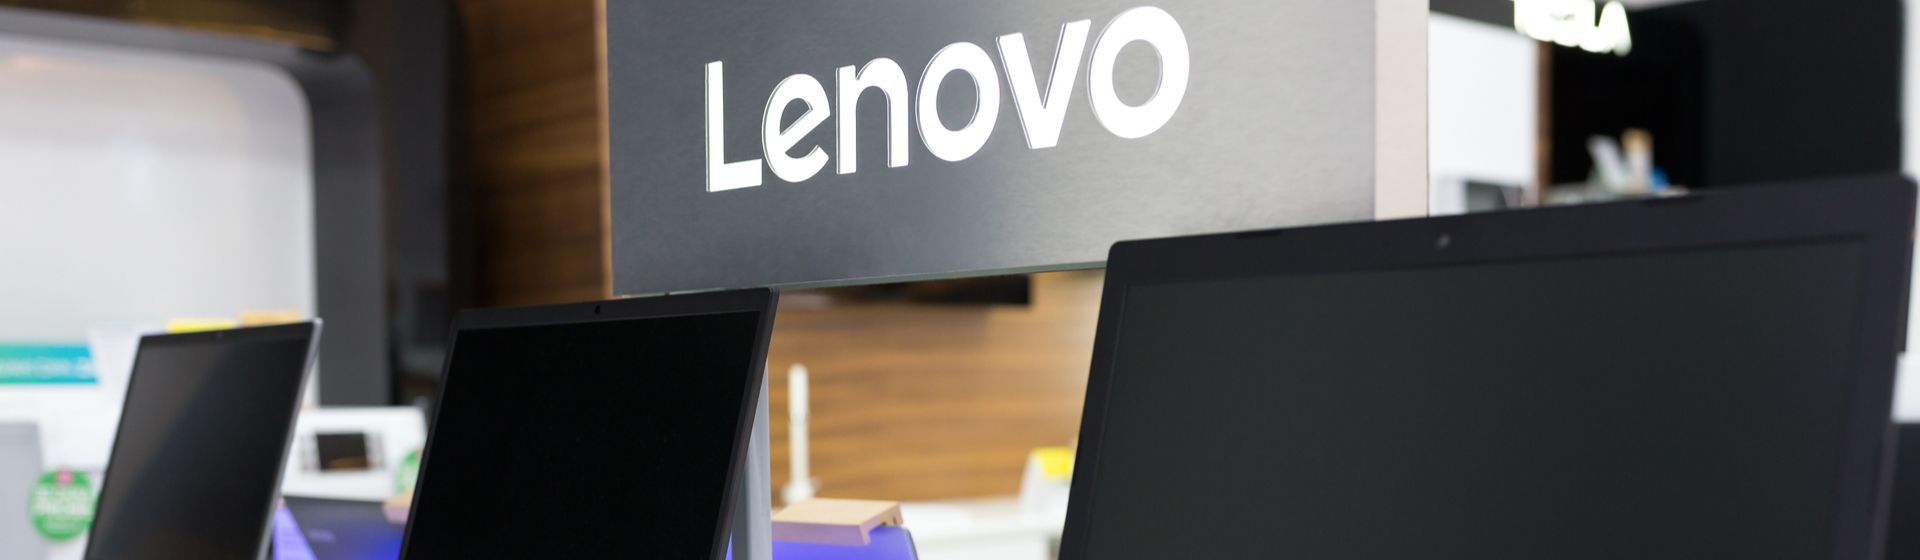 Lenovo IdeaPad 330 com Intel Core i3 é bom? Análise do notebook básico